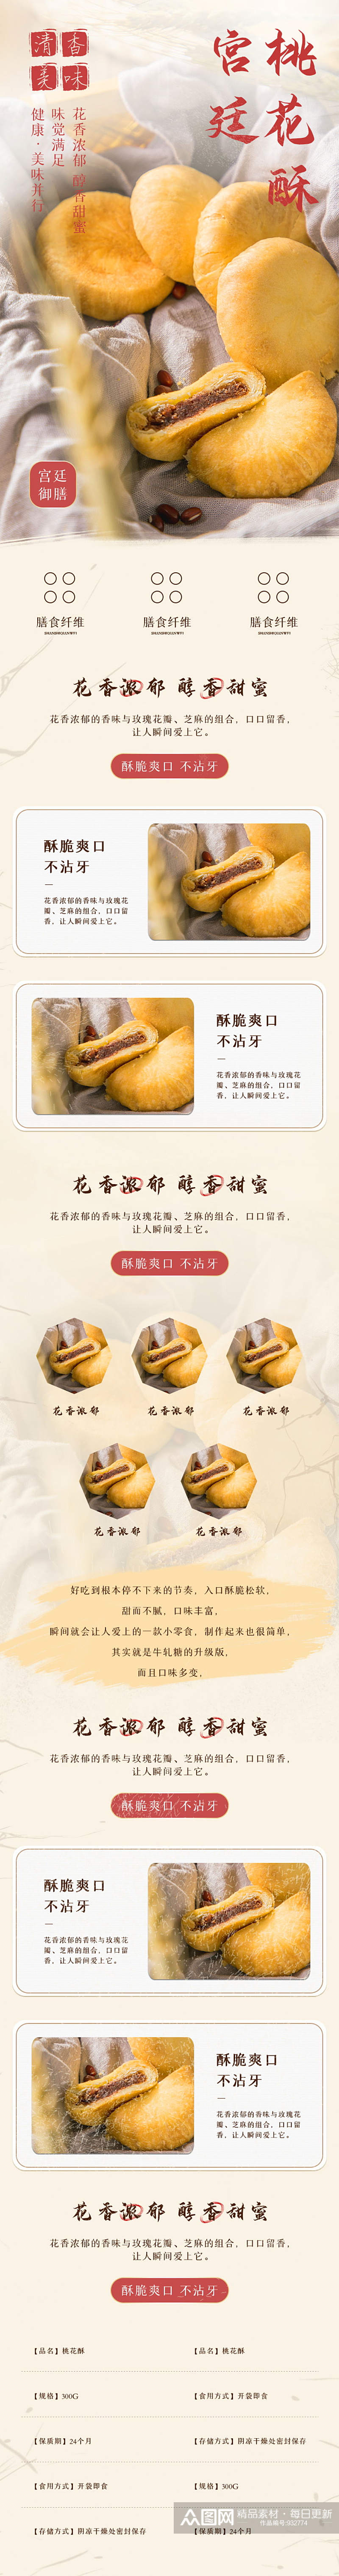 中国风食品宫廷桃酥饼国潮风详情页素材